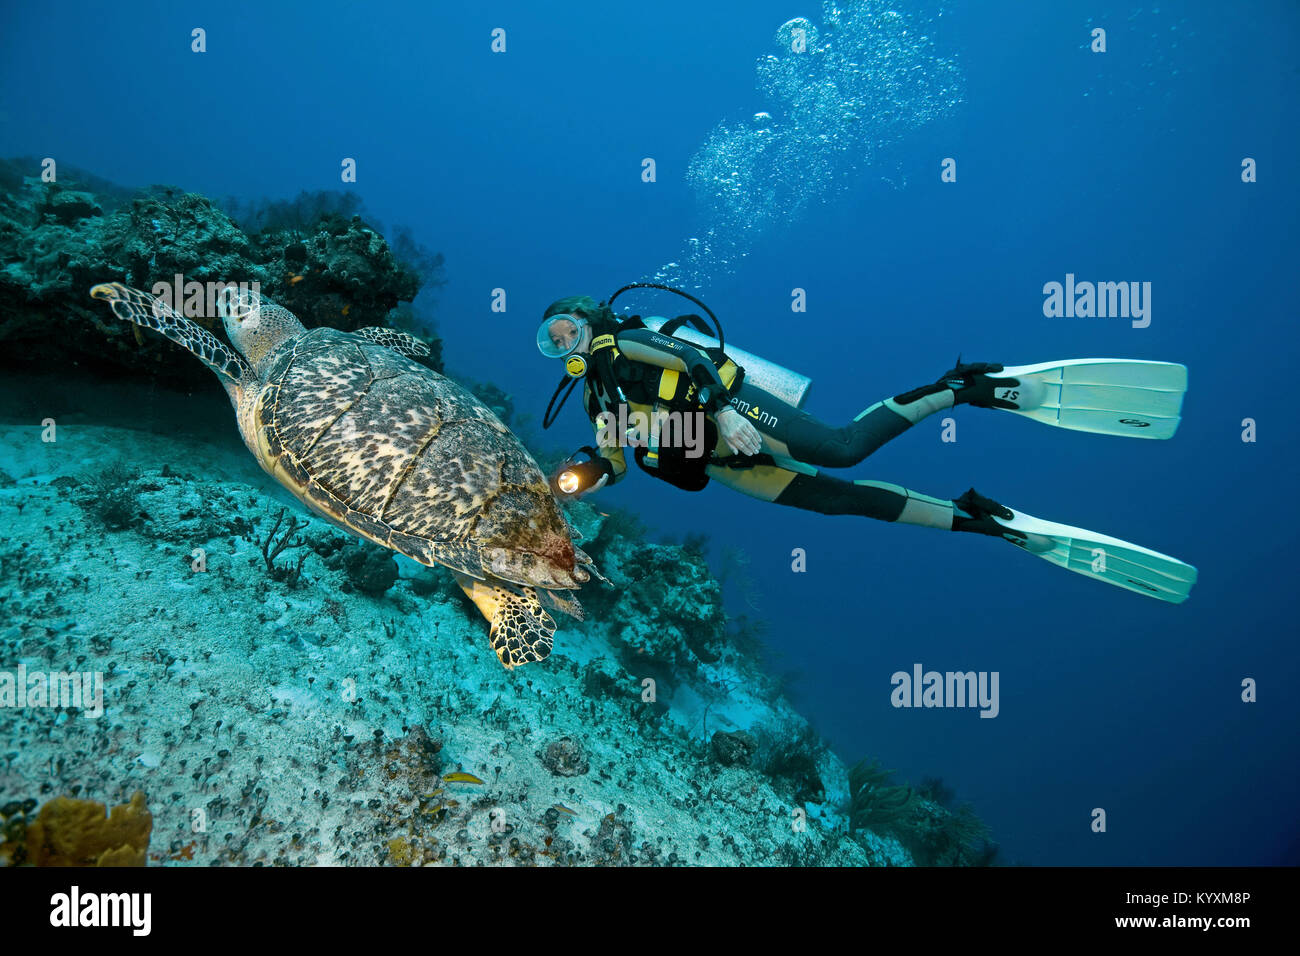 Los buceadores nadando con una tortuga carey (Eretmochelys imbricata), Playa del Carmen, la península de Yucatán, México, el Caribe Foto de stock